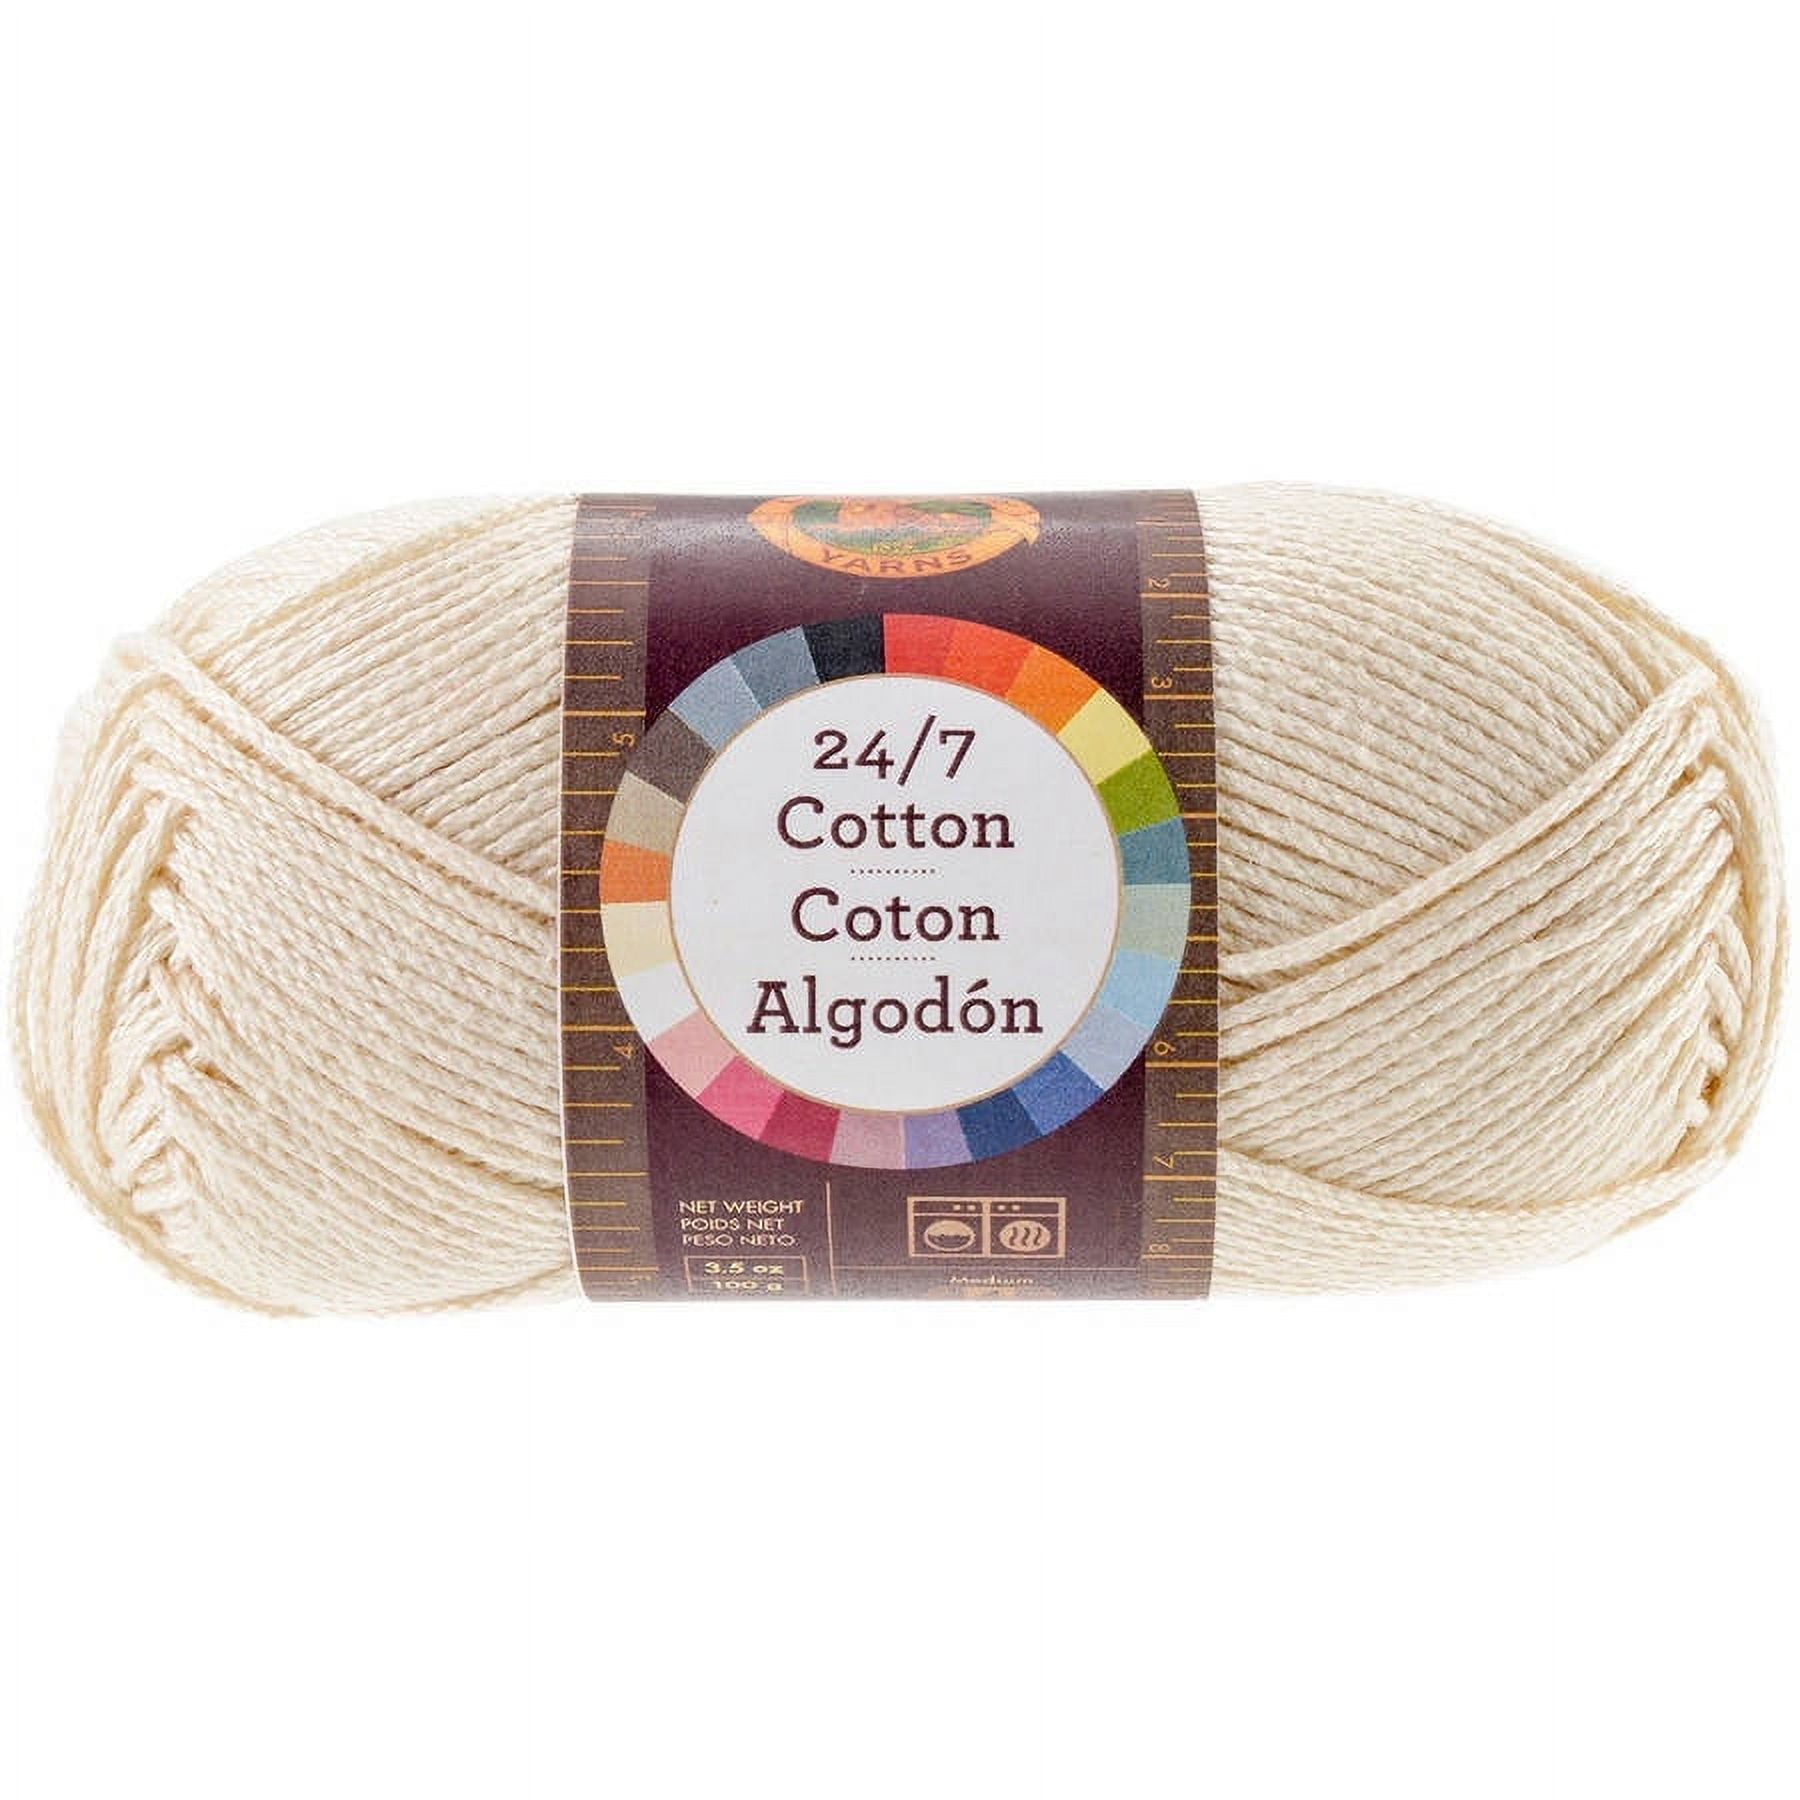 Lion Brand Yarn 24/7 Cotton Dk Yarn, Tamarin